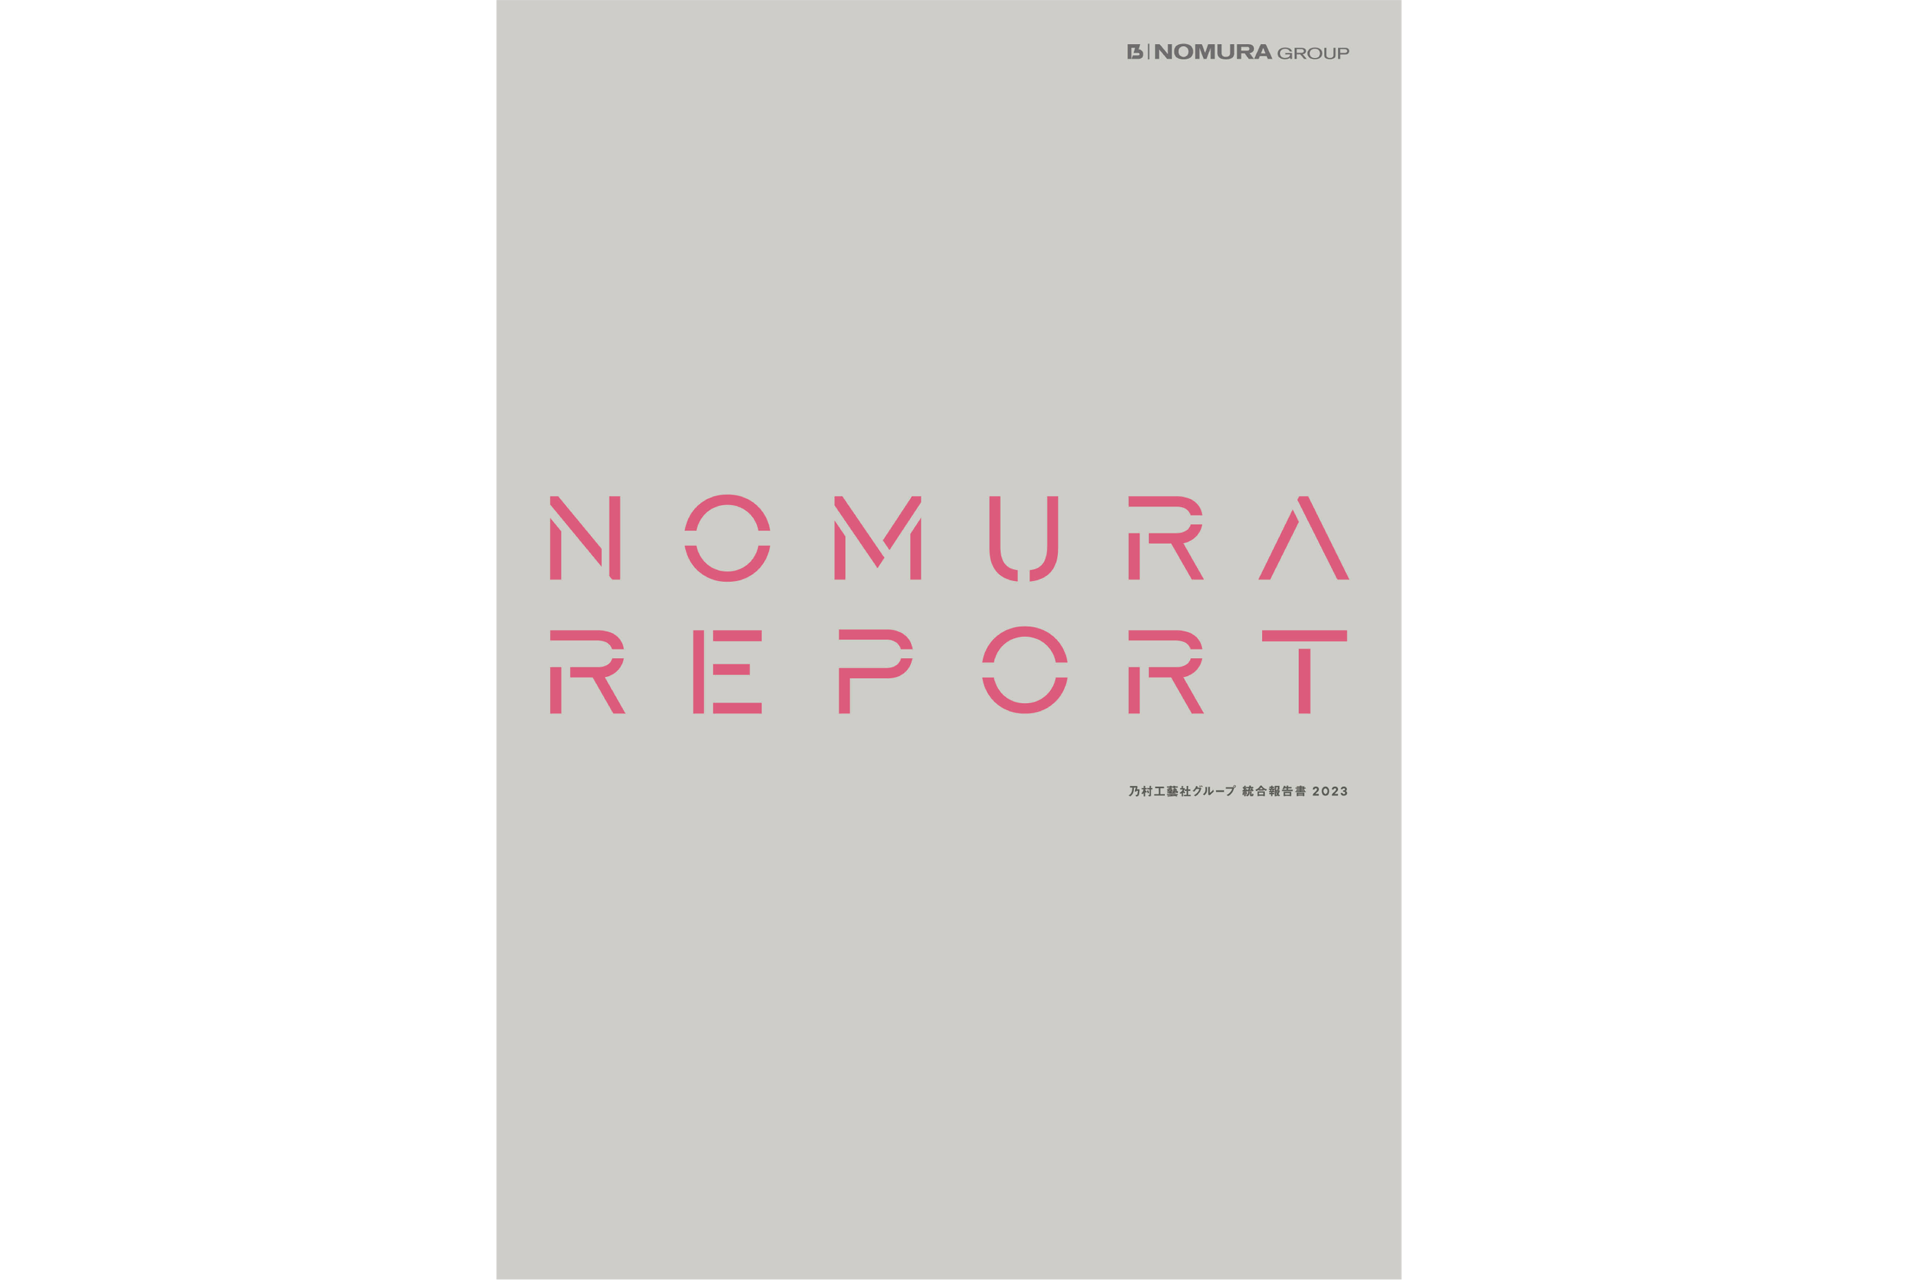 乃村工藝社グループ統合報告書「NOMURA REPORT 2023」を公開しました